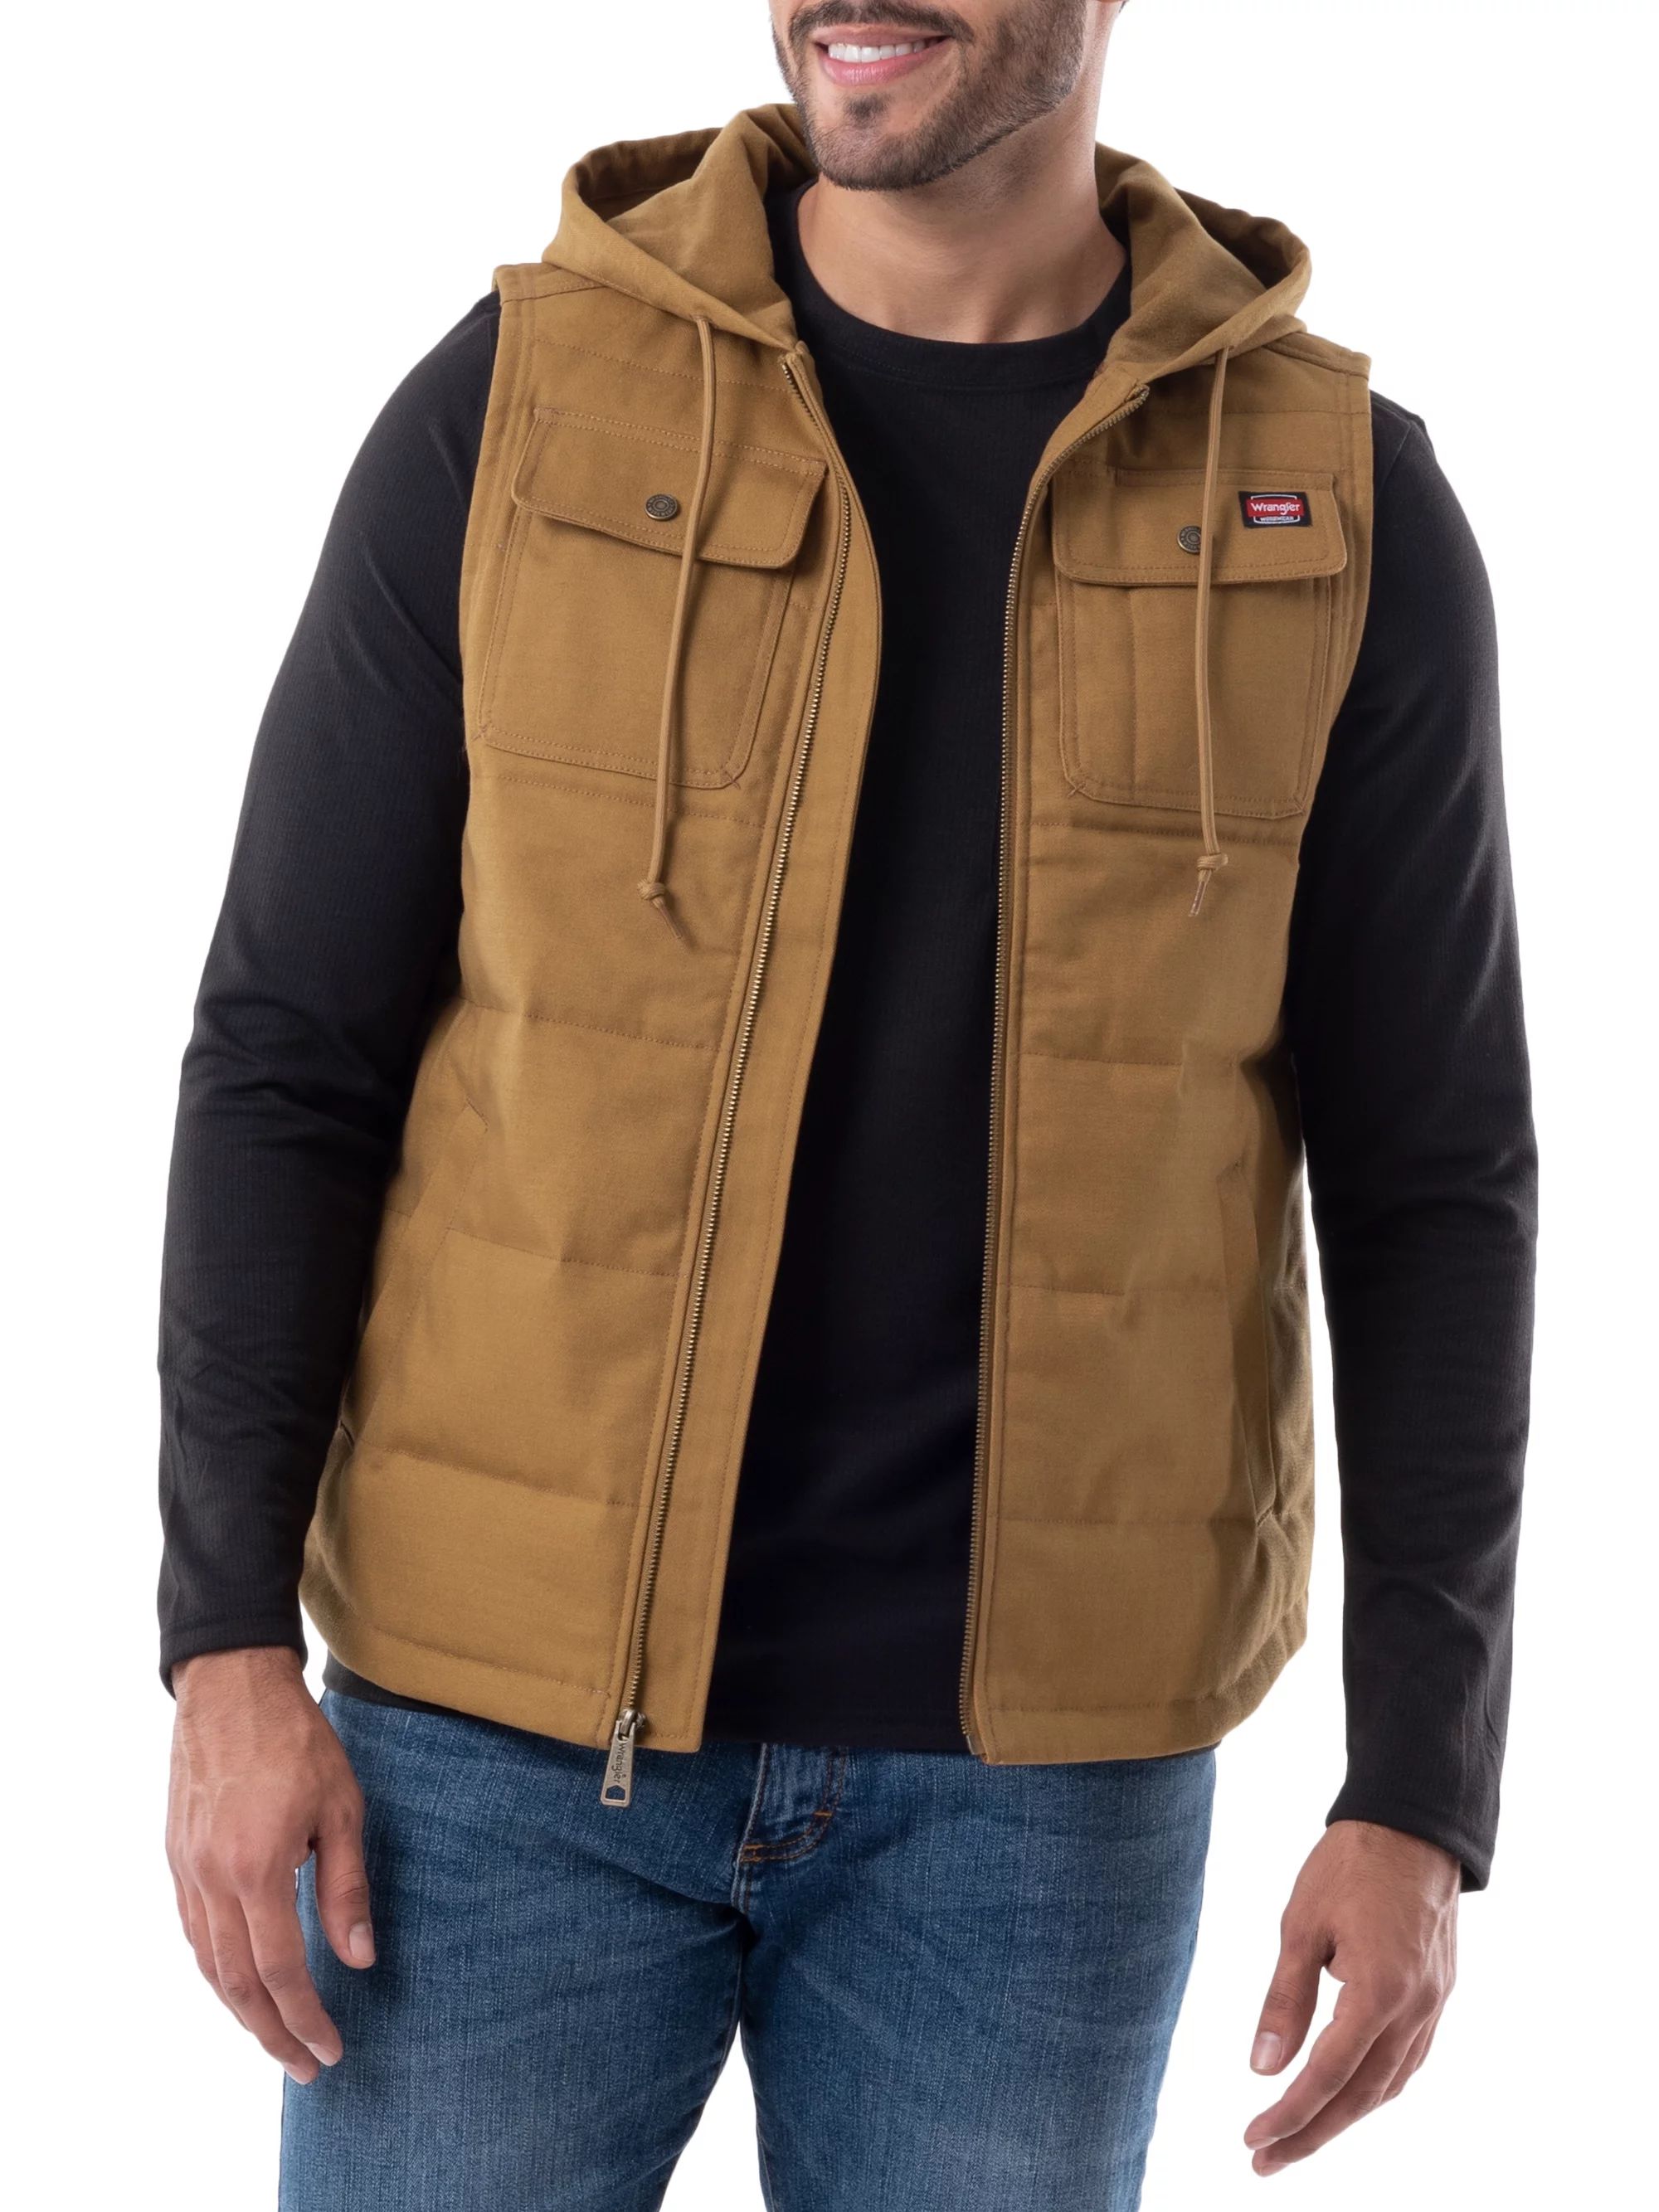 Wrangler Workwear Men's & Big Men's Quilted Lined Duck Vest with Hood, Sizes S-5XL | Walmart (US)